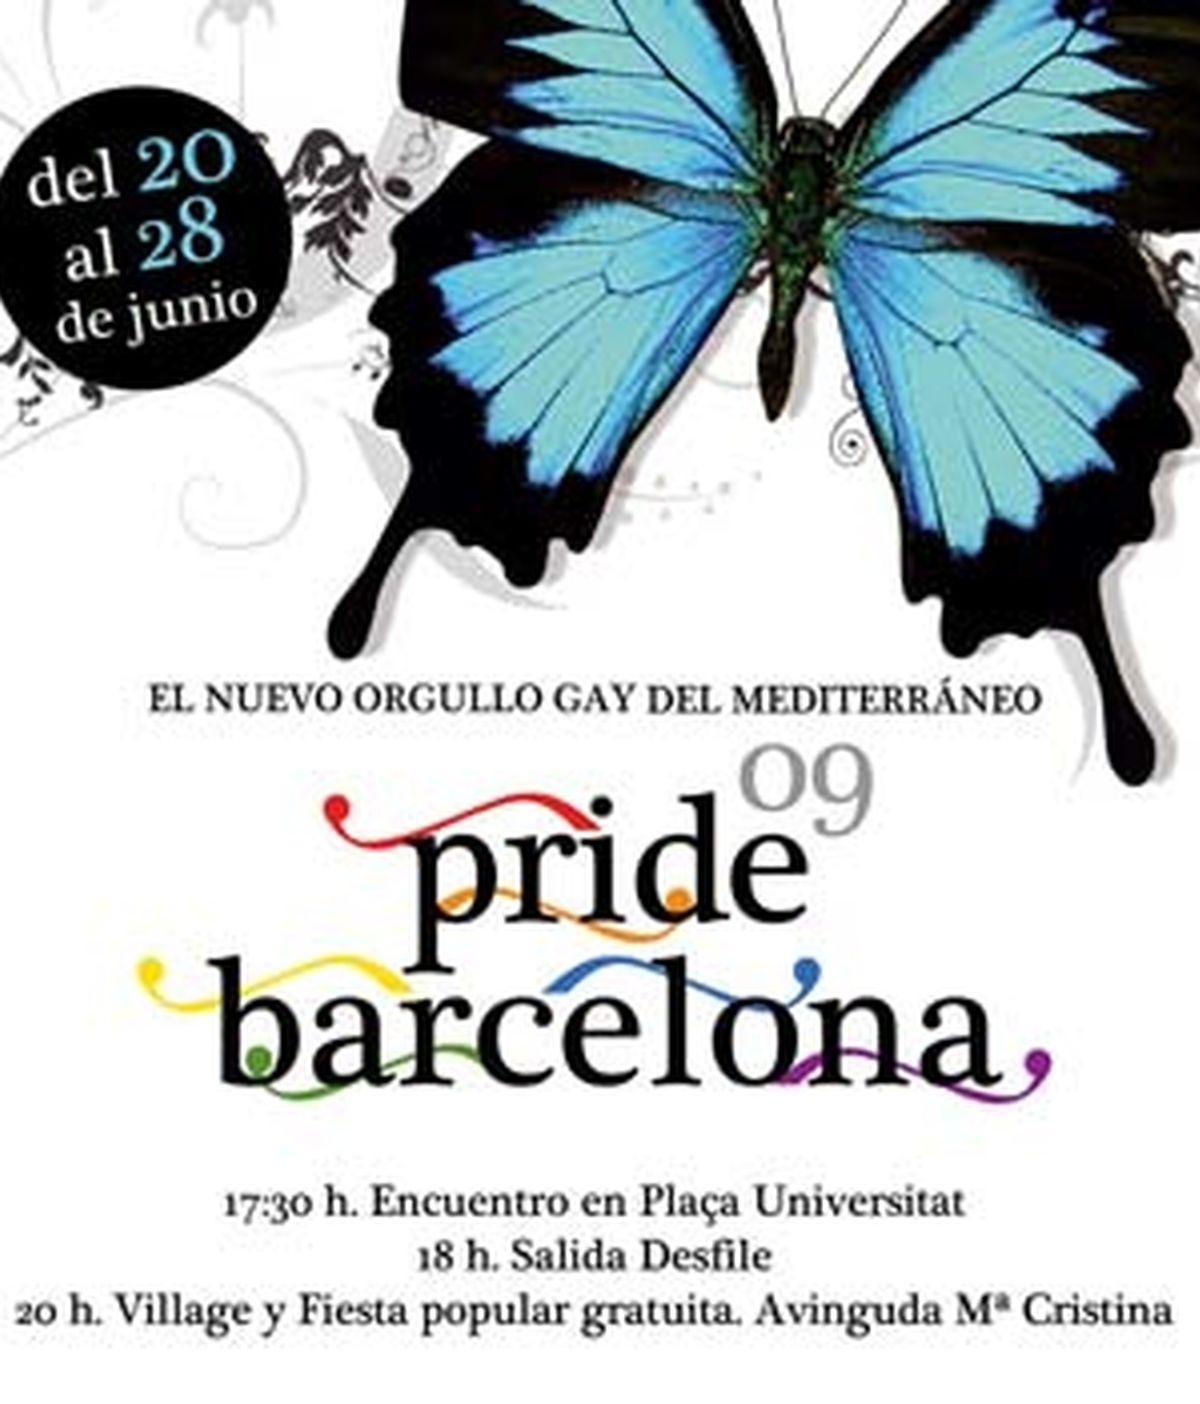 El desfile del Orgullo Gay del Mediterráneo, una gran fiesta con todo tipo de actividades, conciertos, cine, exposiciones, en Barcelona. Vídeo Informativos Telecinco.